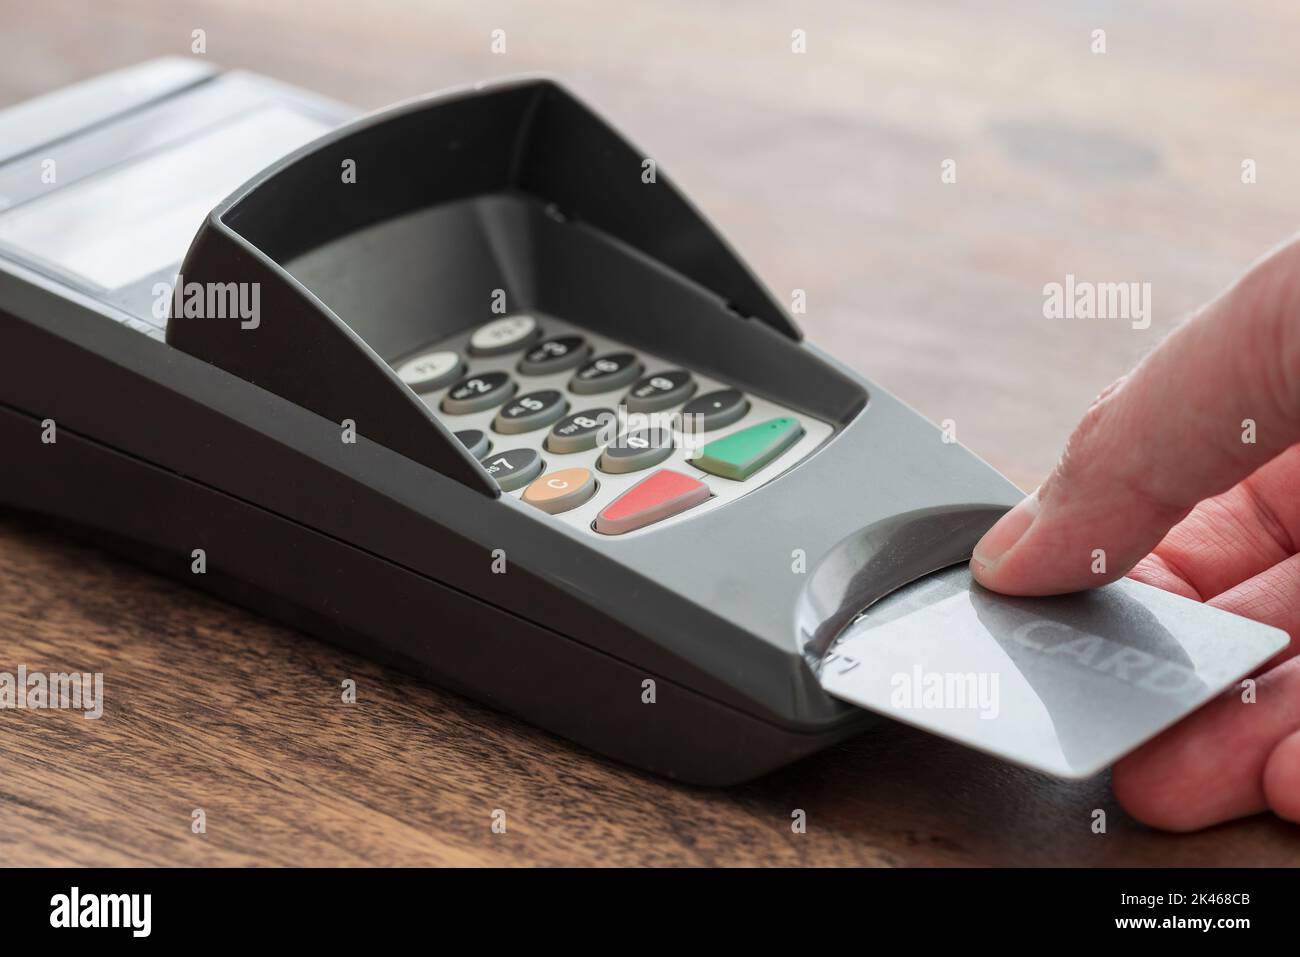 vue rapprochée de la personne insérer carte de crédit ou carte de débit dans lecteur de carte, concept de paiement sans espèces Banque D'Images